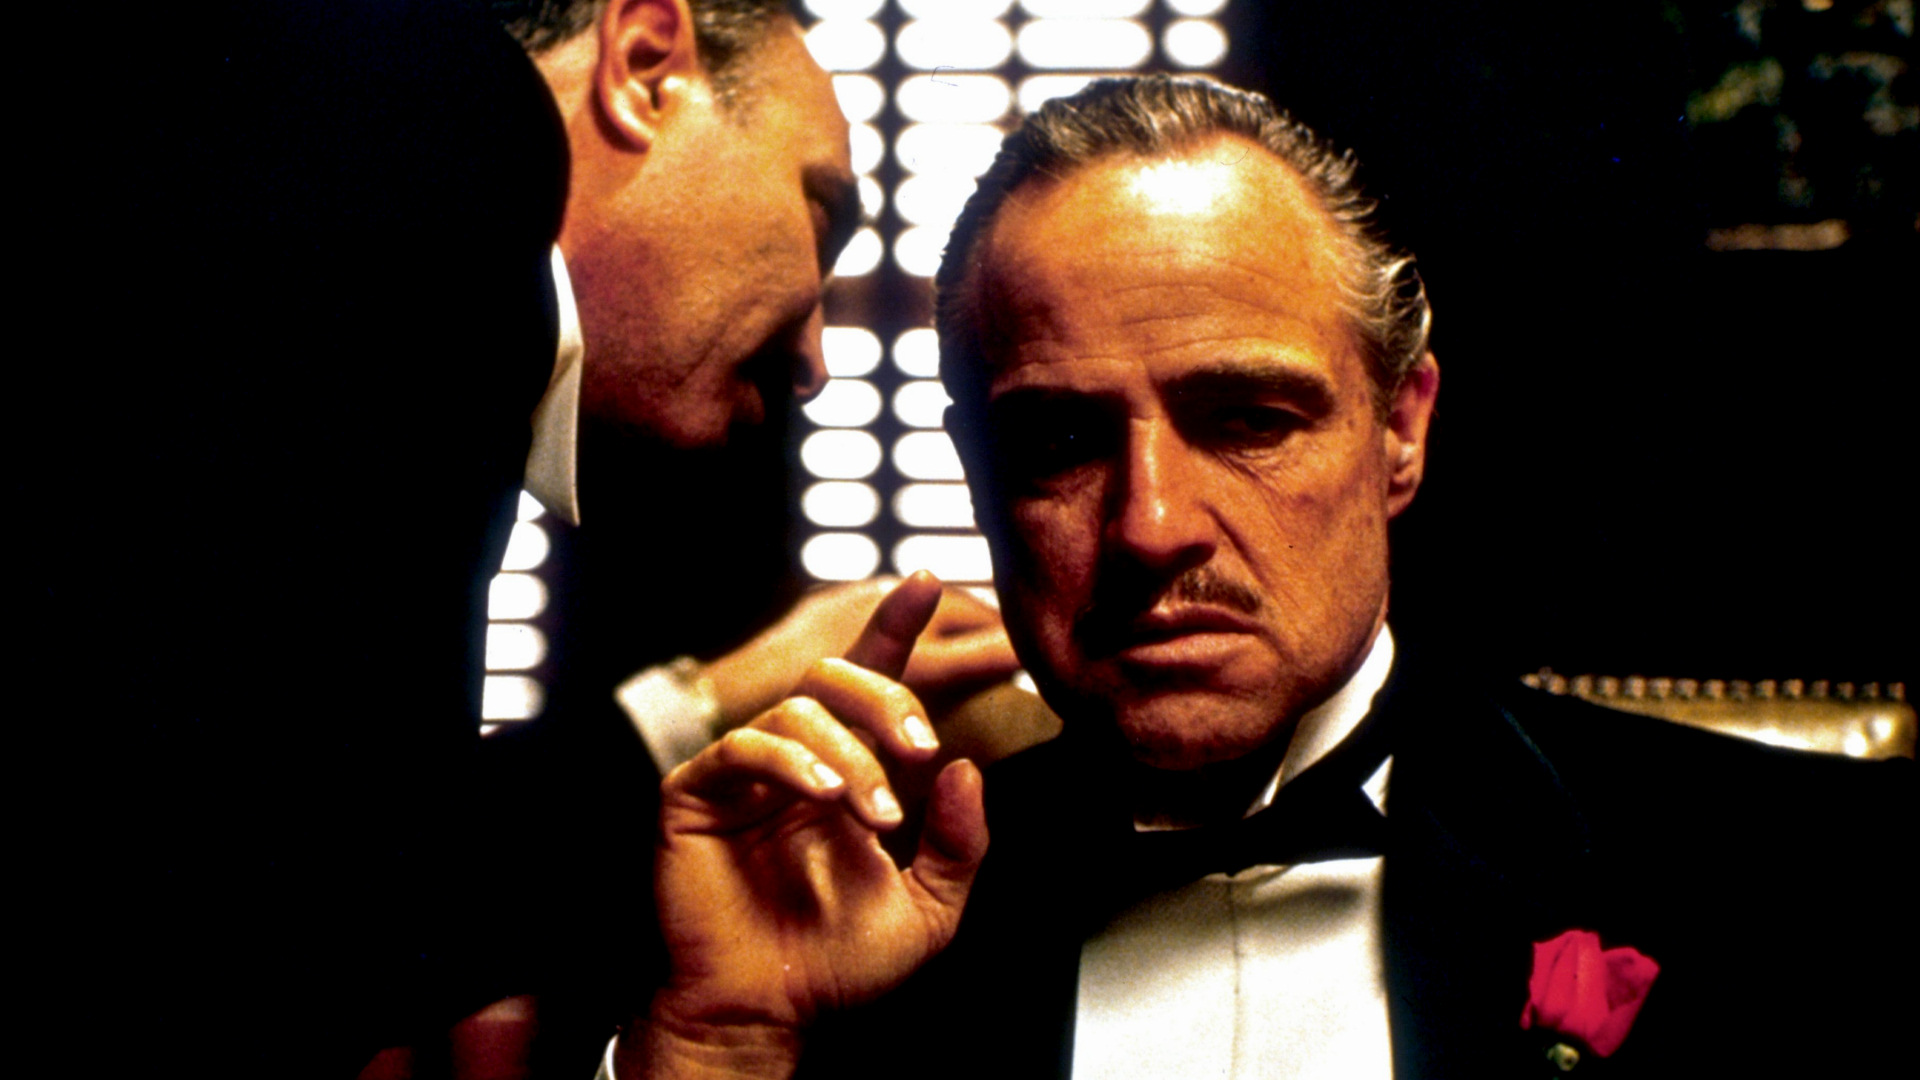 мафия, Крестный отец, Вито Корлеоне - обои на рабочий стол